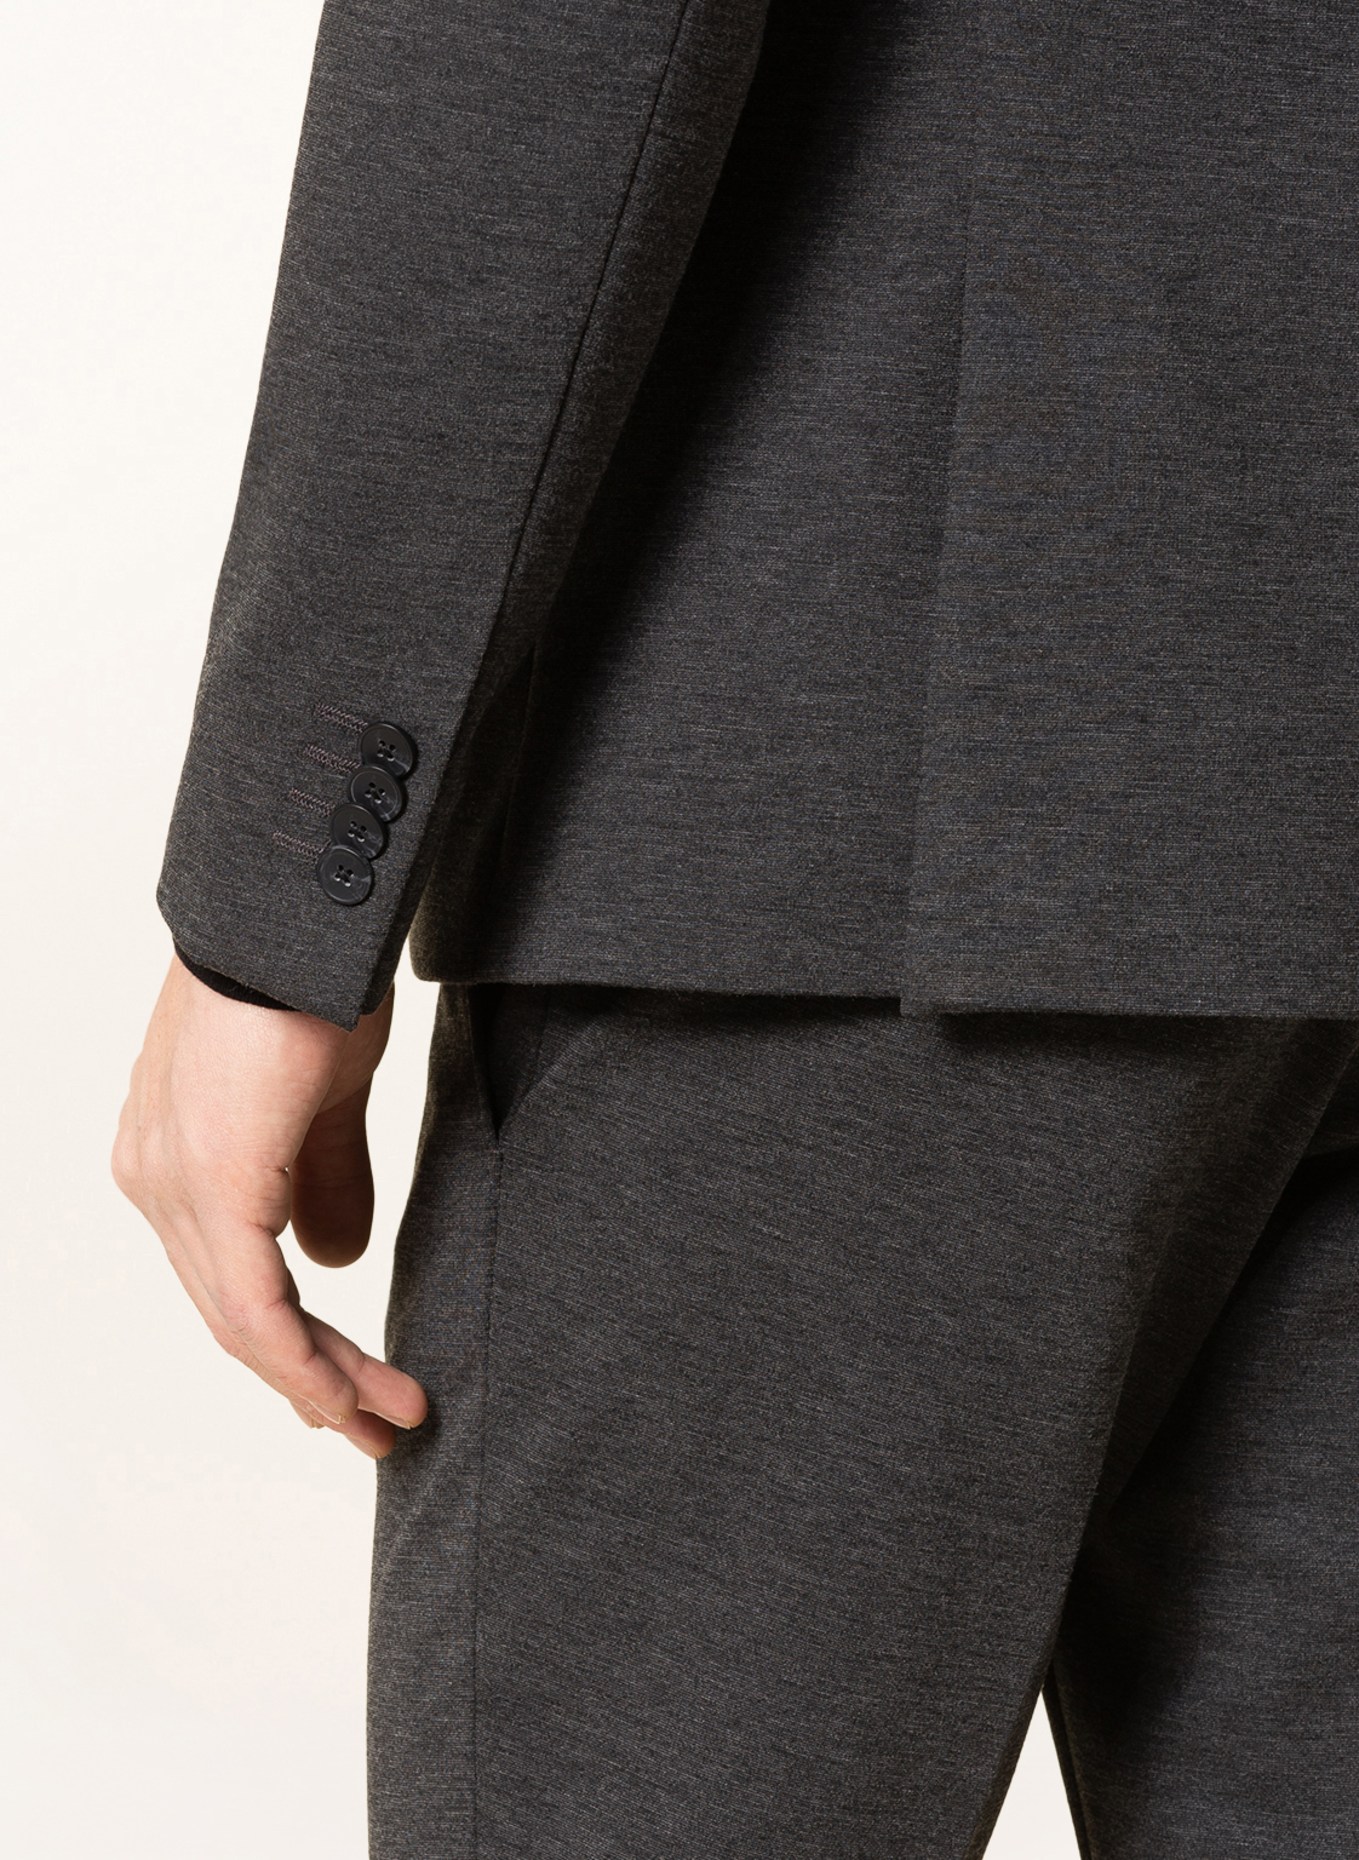 PAUL Suit jacket slim fit, Color: 750 Charcoal (Image 6)